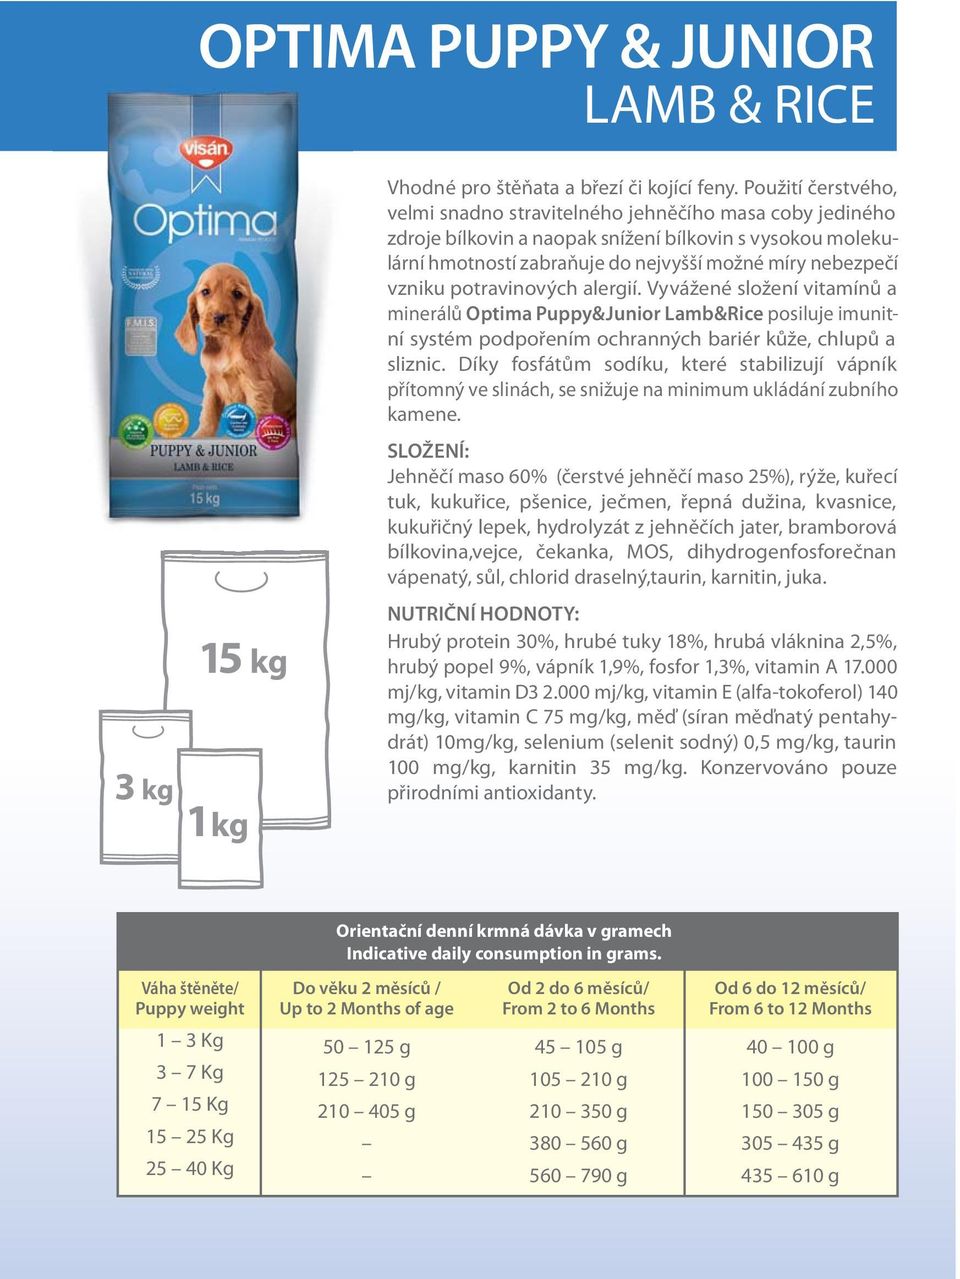 potravinových alergií. Vyvážené složení vitamínů a minerálů Optima Puppy&Junior Lamb&Rice posiluje imunitní systém podpořením ochranných bariér kůže, chlupů a sliznic.